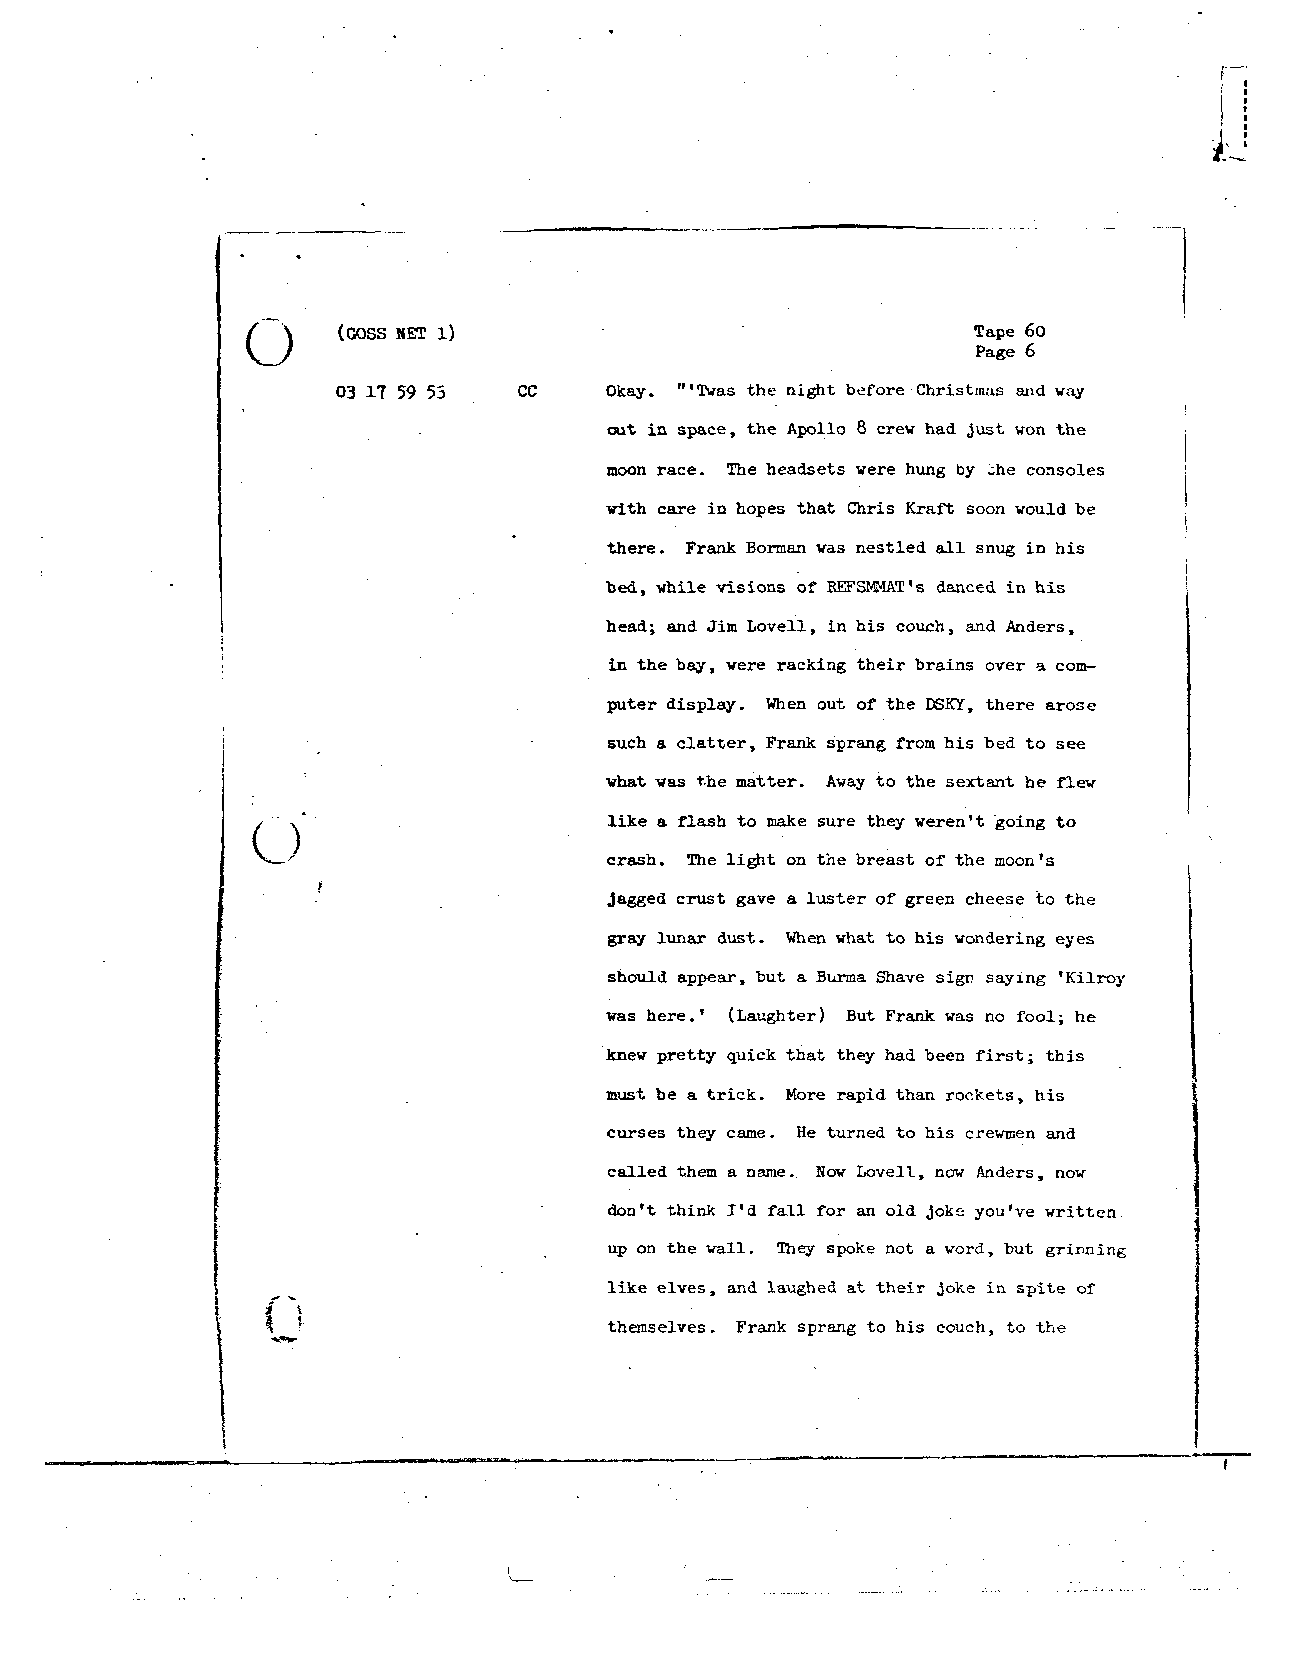 Page 481 of Apollo 8’s original transcript